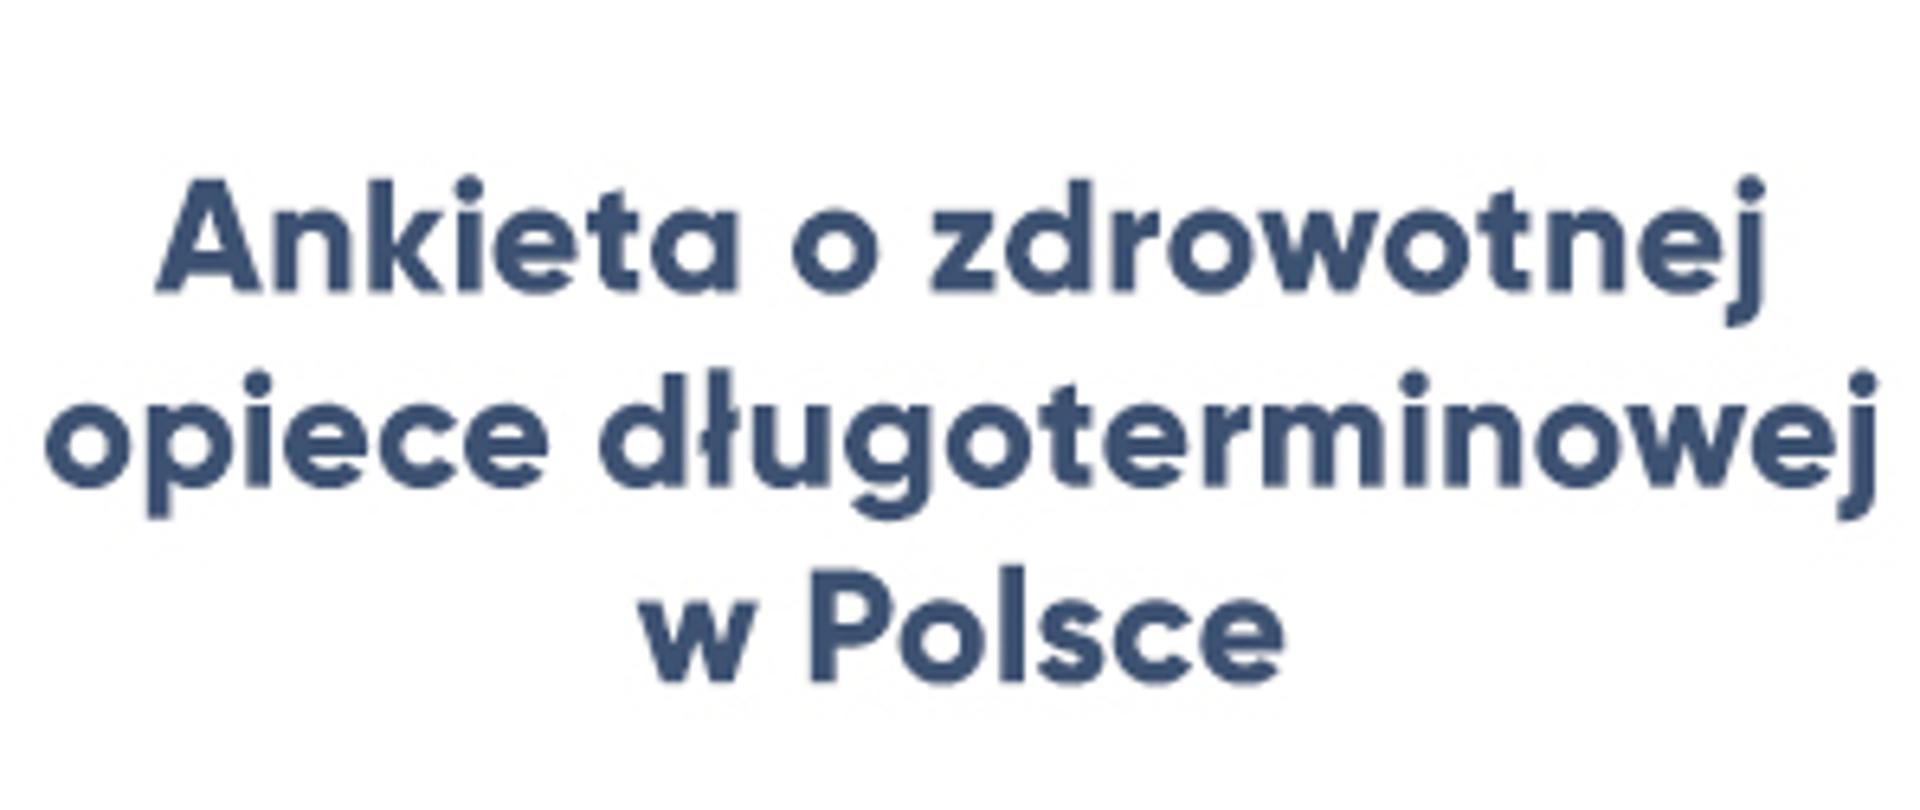 Ankieta o zdrowotnej opiece długoterminowej w Polsce